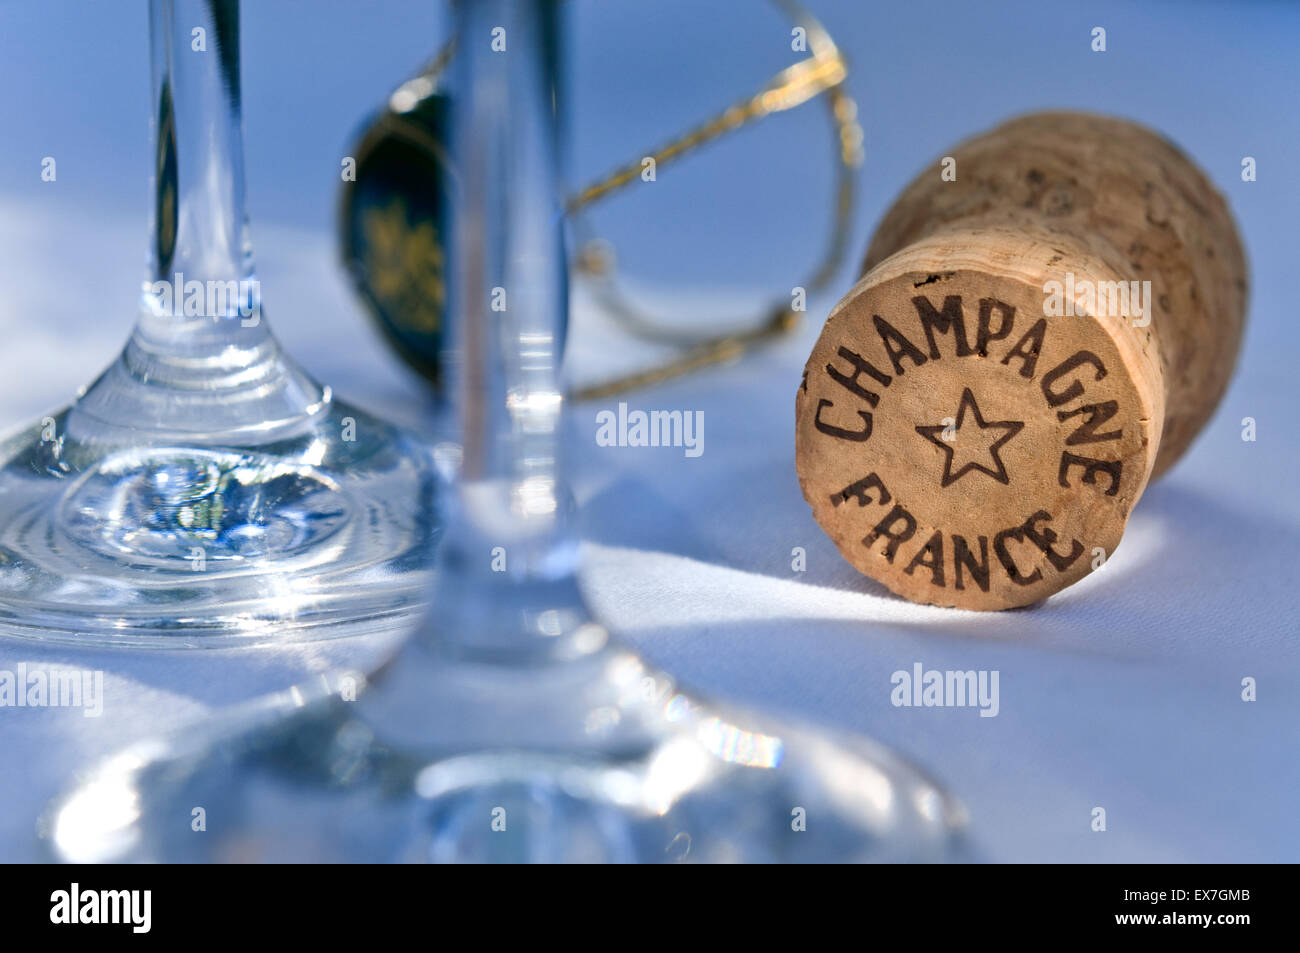 Tappo dello Champagne sulla tovaglia bianca con vetri a filo del telaio di fissaggio e il tappo in raffinati ristoranti situazione Foto Stock